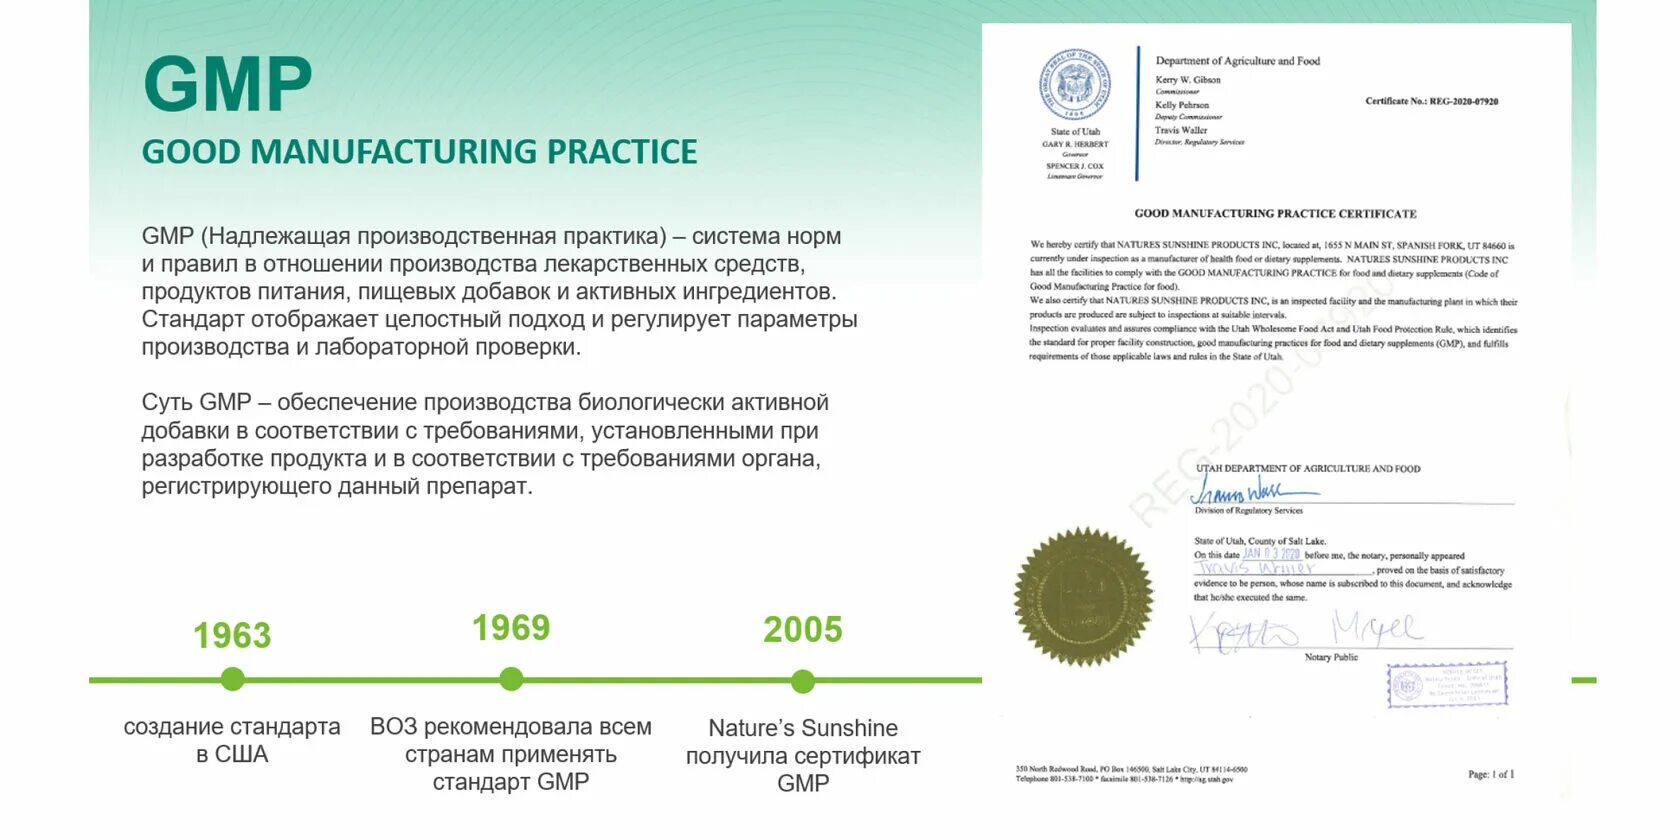 Регистрация биологически активных добавок. Сертификаты НСП качества. Сертификат качества на БАДЫ. Качество НСП. Сертификат FDA NSP.